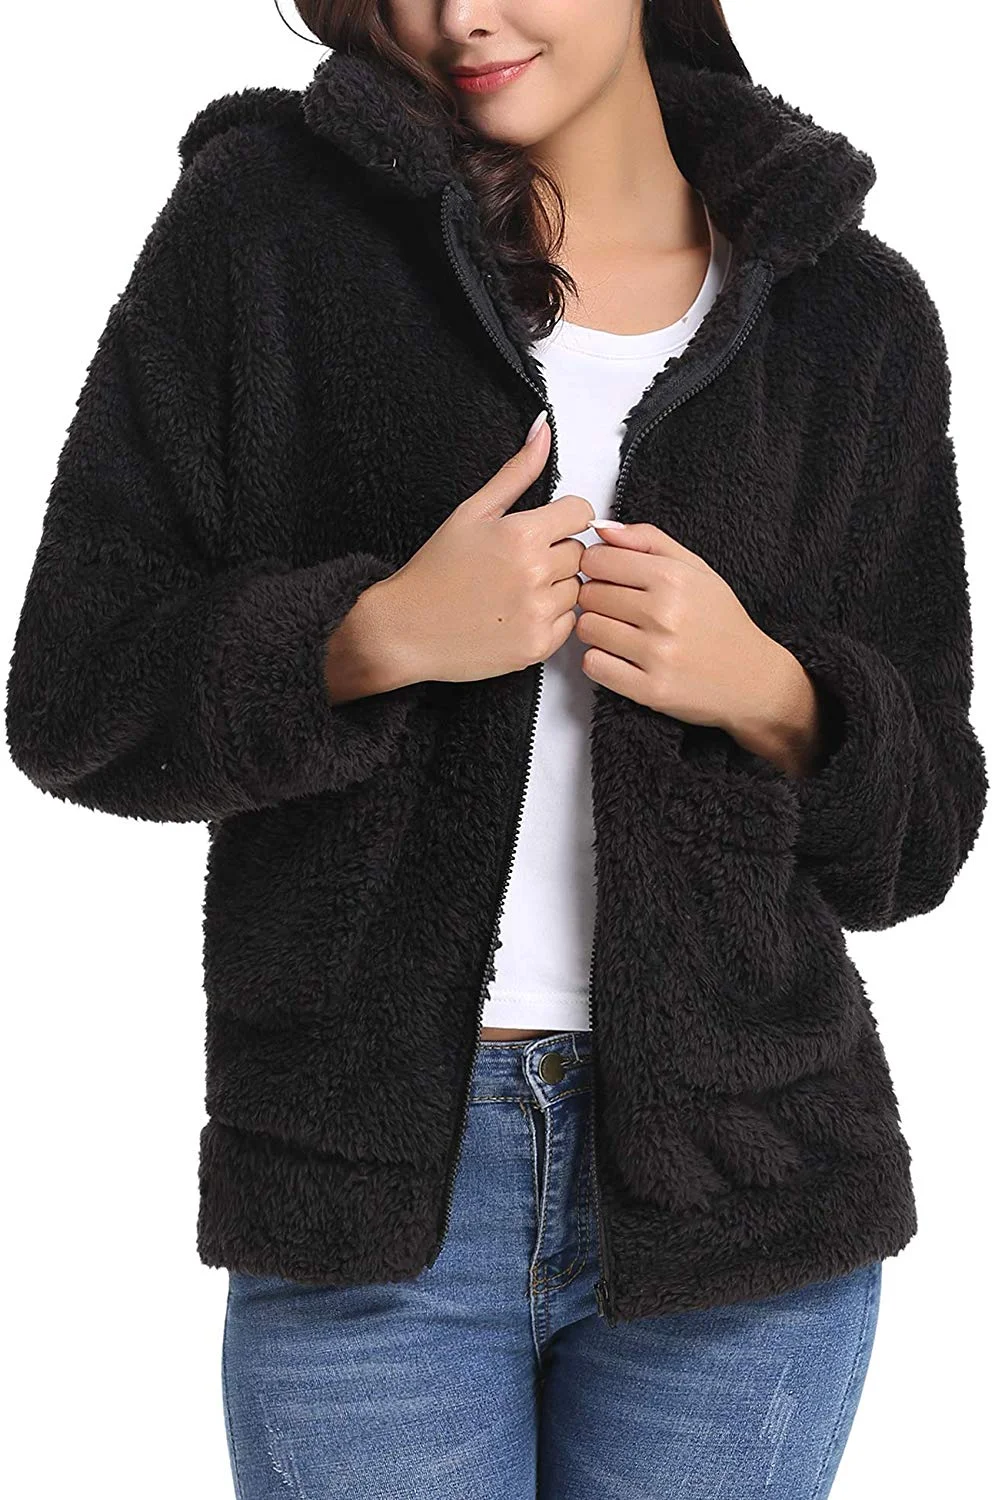 Women's Long Sleeve Coat Casual Lapel Fleece Fuzzy Faux Shearling Zipper Warm Winter Oversized Outwear Jackets